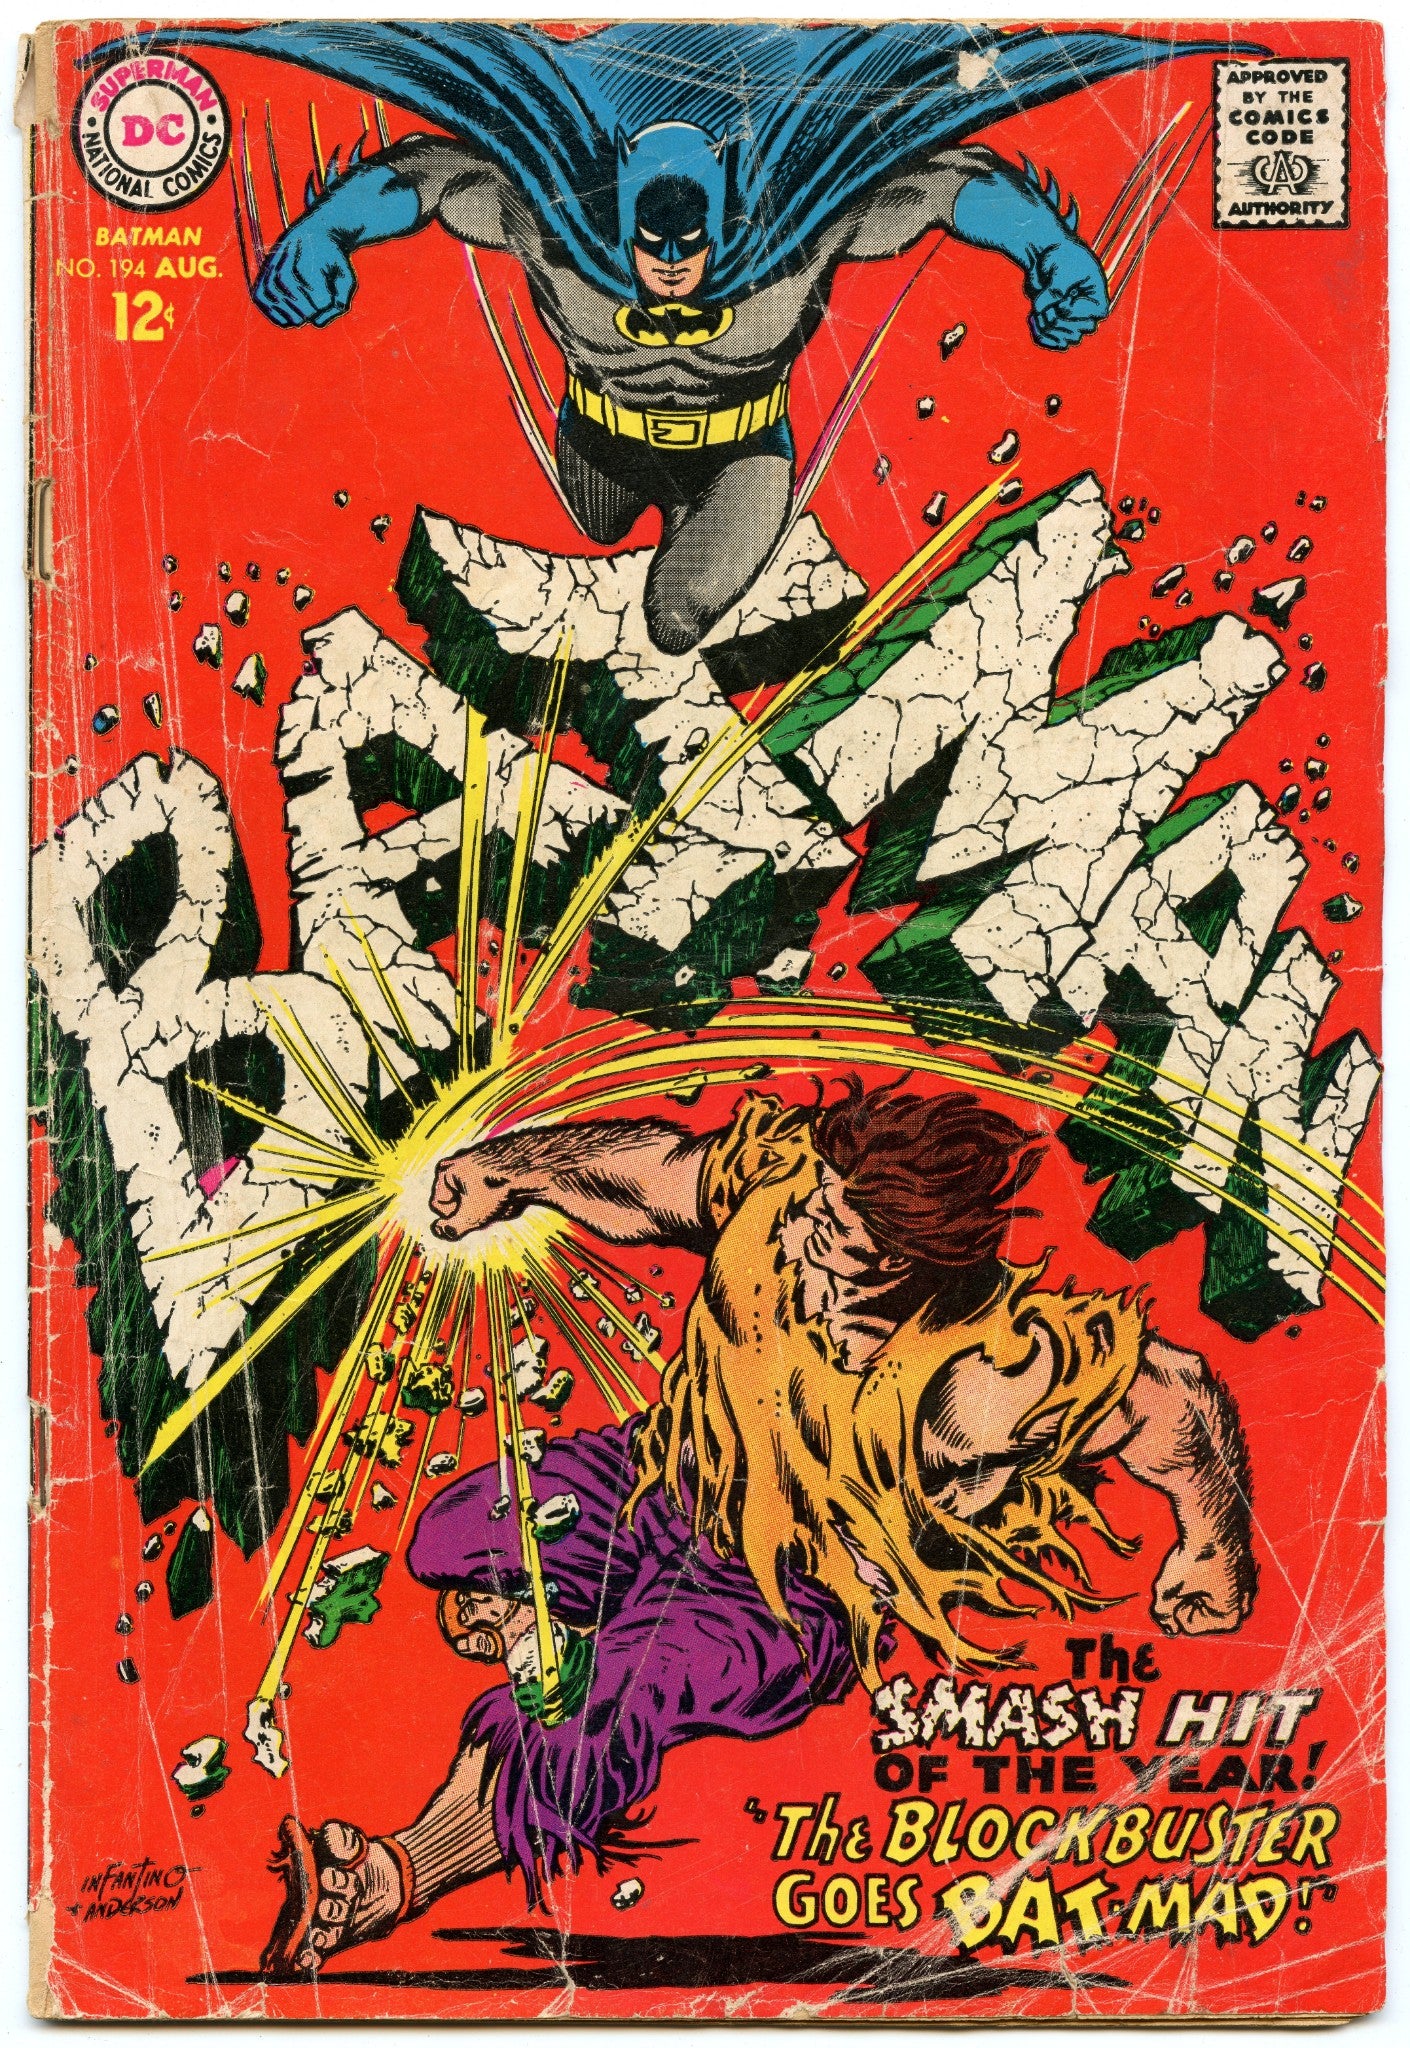 Batman (Meets Blockbuster; 1966) Whitman : Retro Reprints